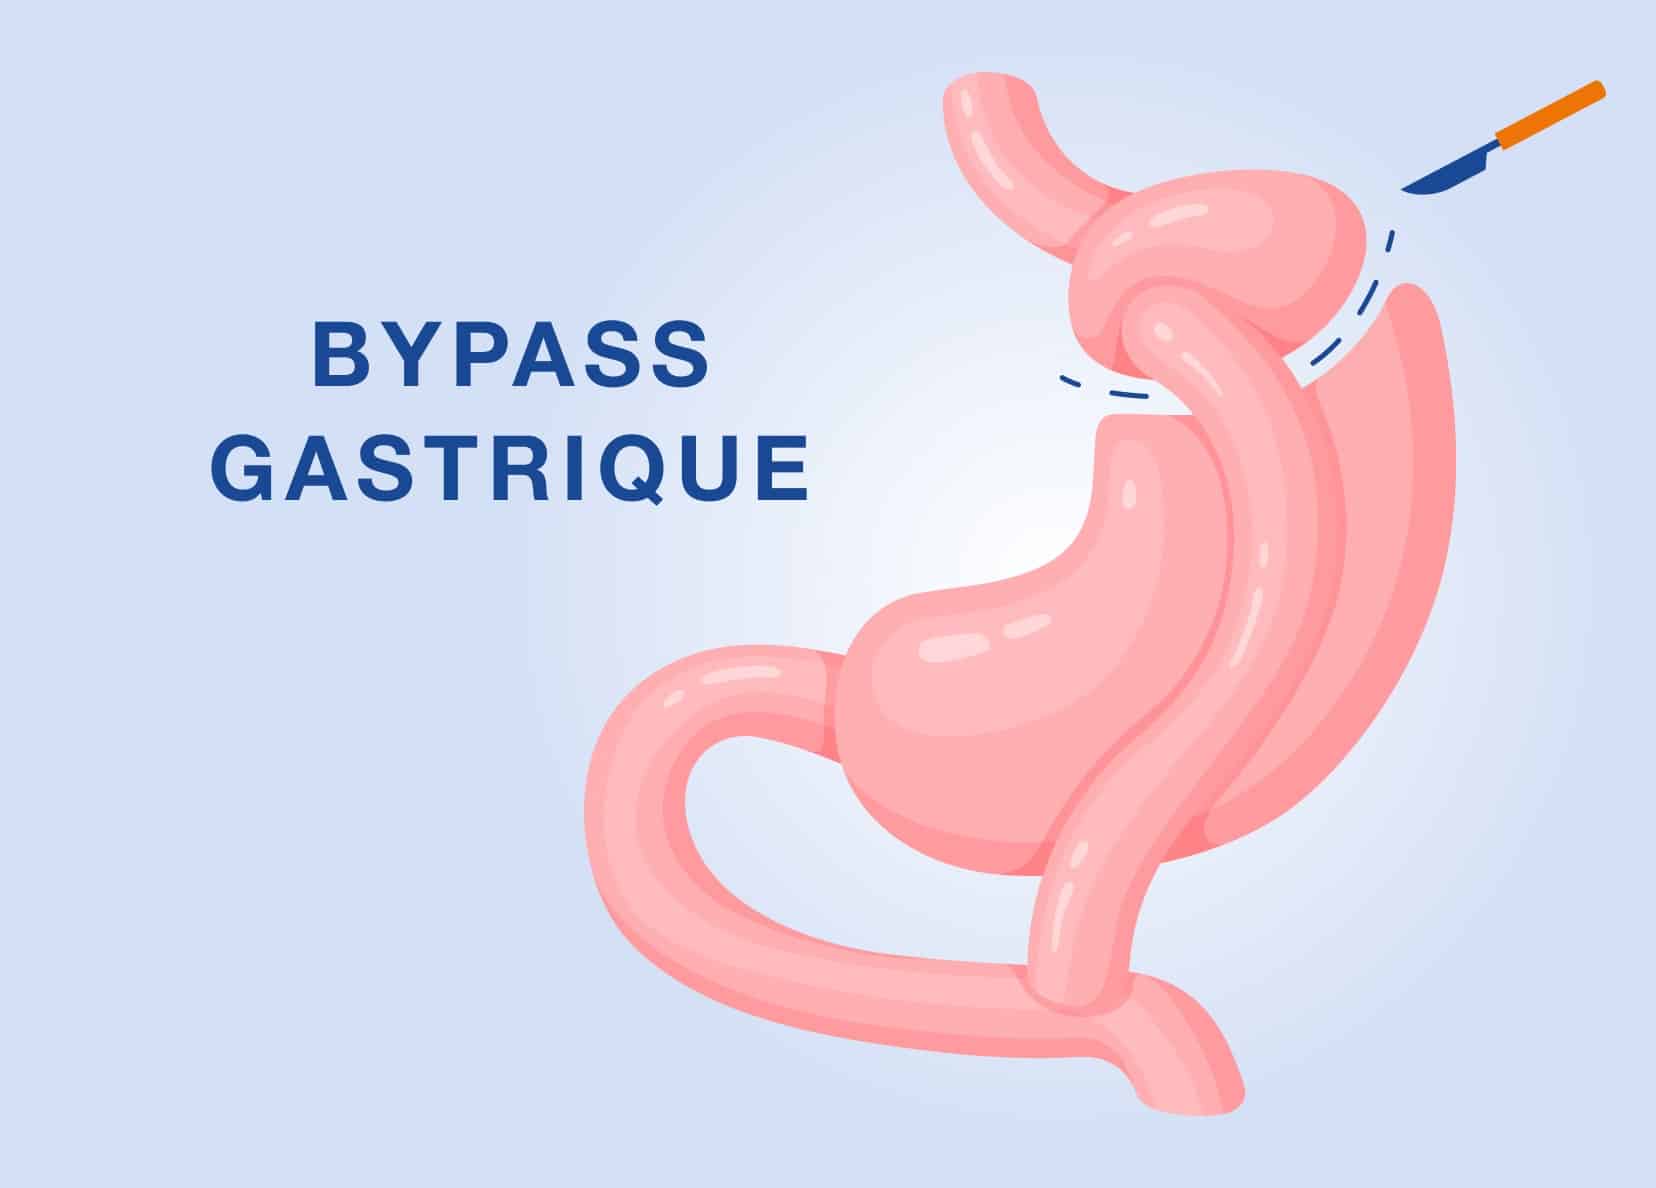 Bypass gastrique à Paris | IOPC | Institut de l'obésité Paris Centre